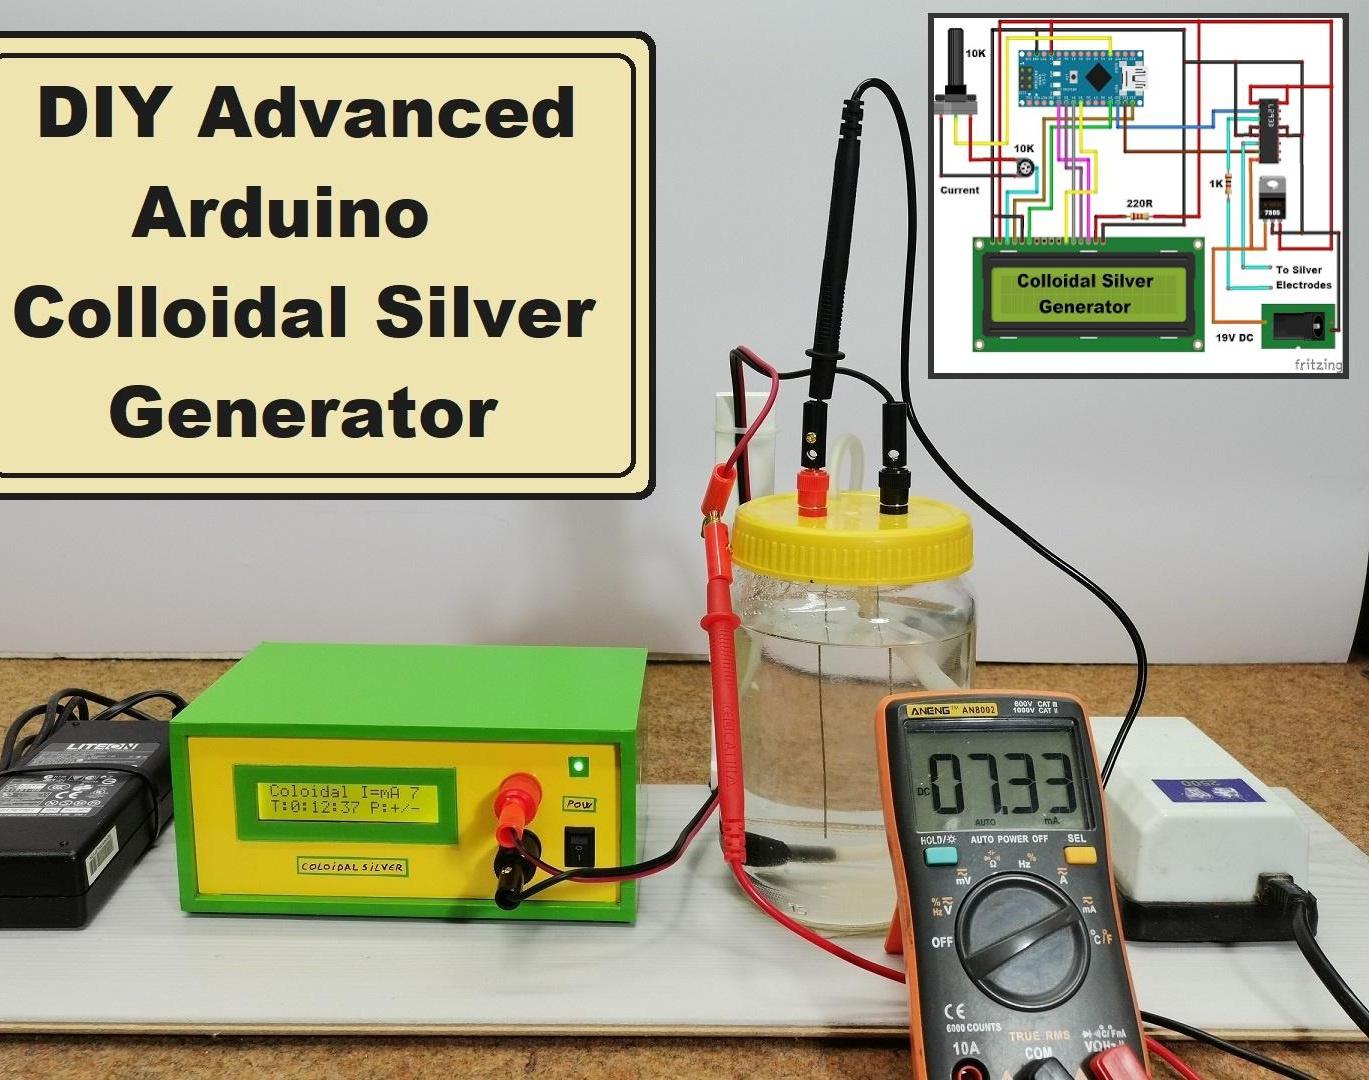 DIY Advanced Arduino Colloidal Silver Generator